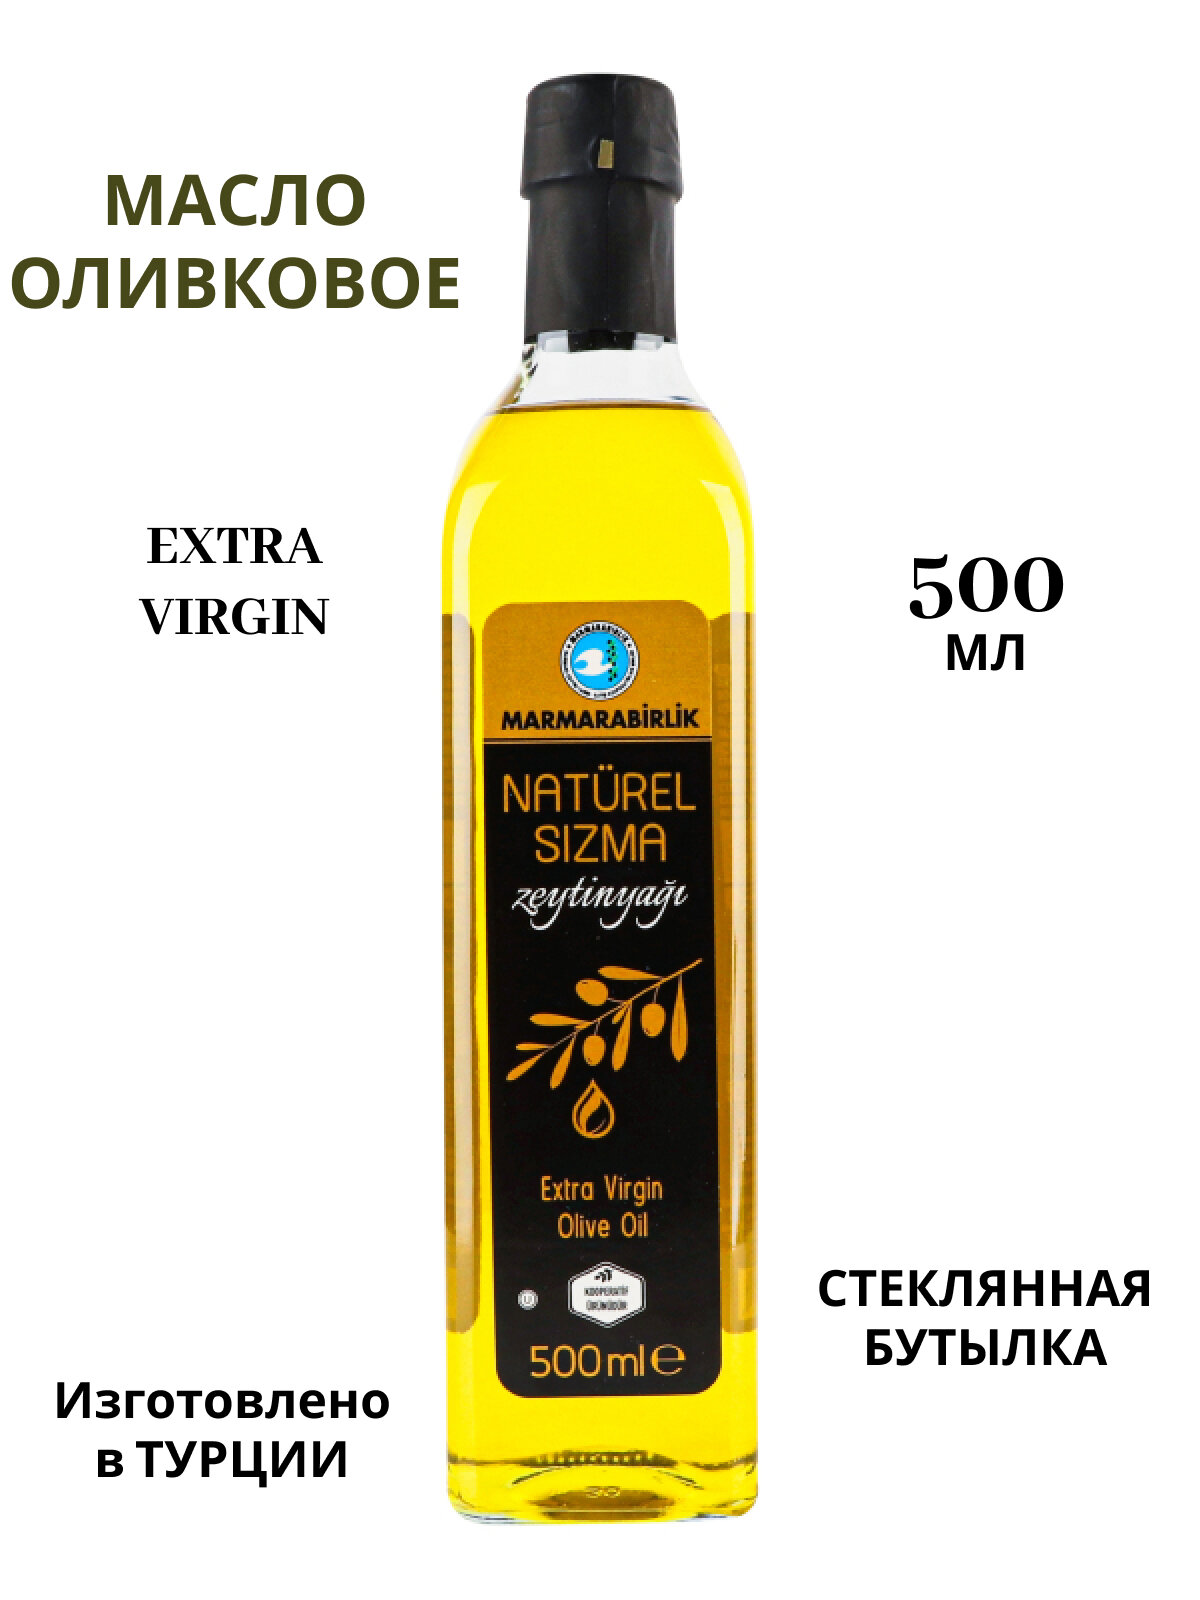 Оливковое масло "Extra Virgin" холодного отжима, 500мл